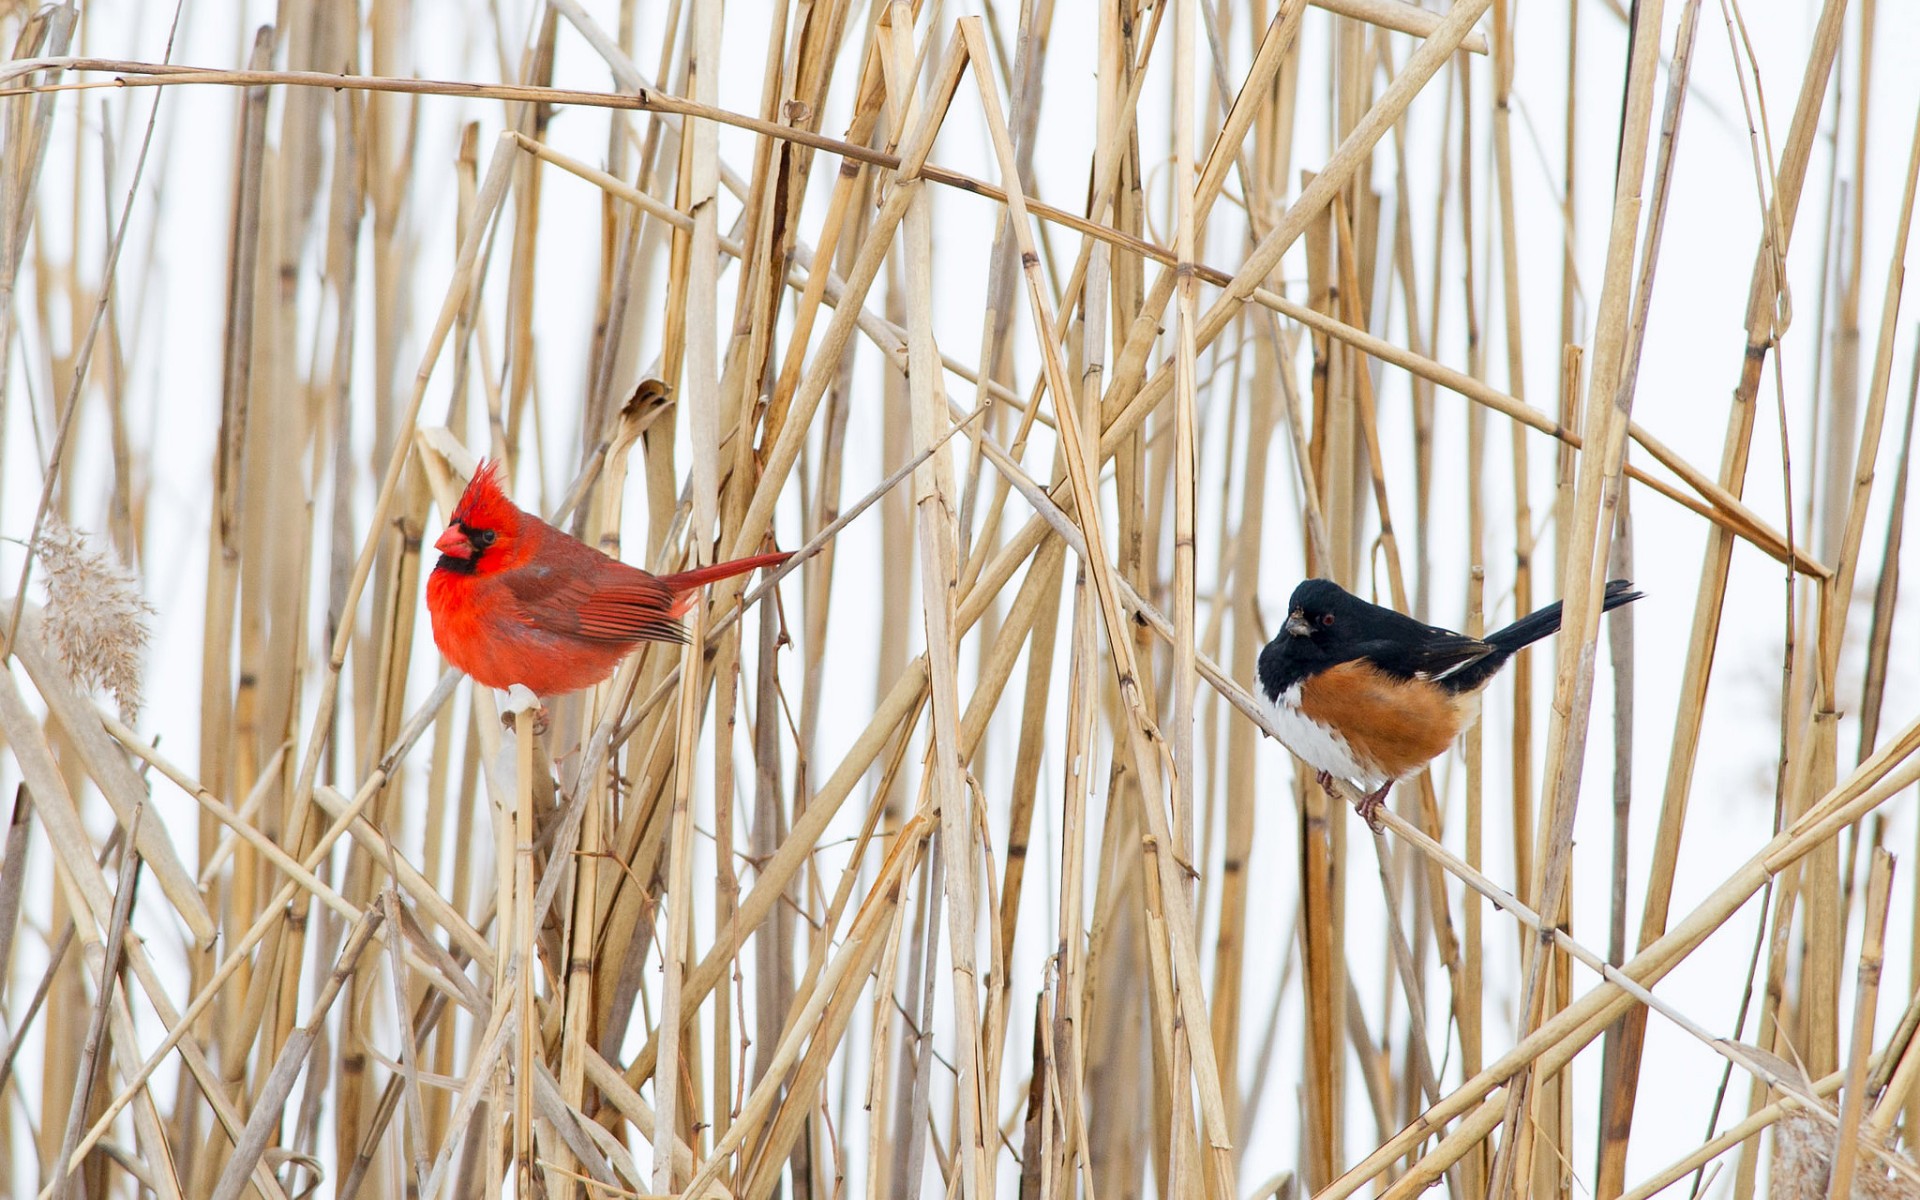 General 1920x1200 nature animals birds cardinals outdoors